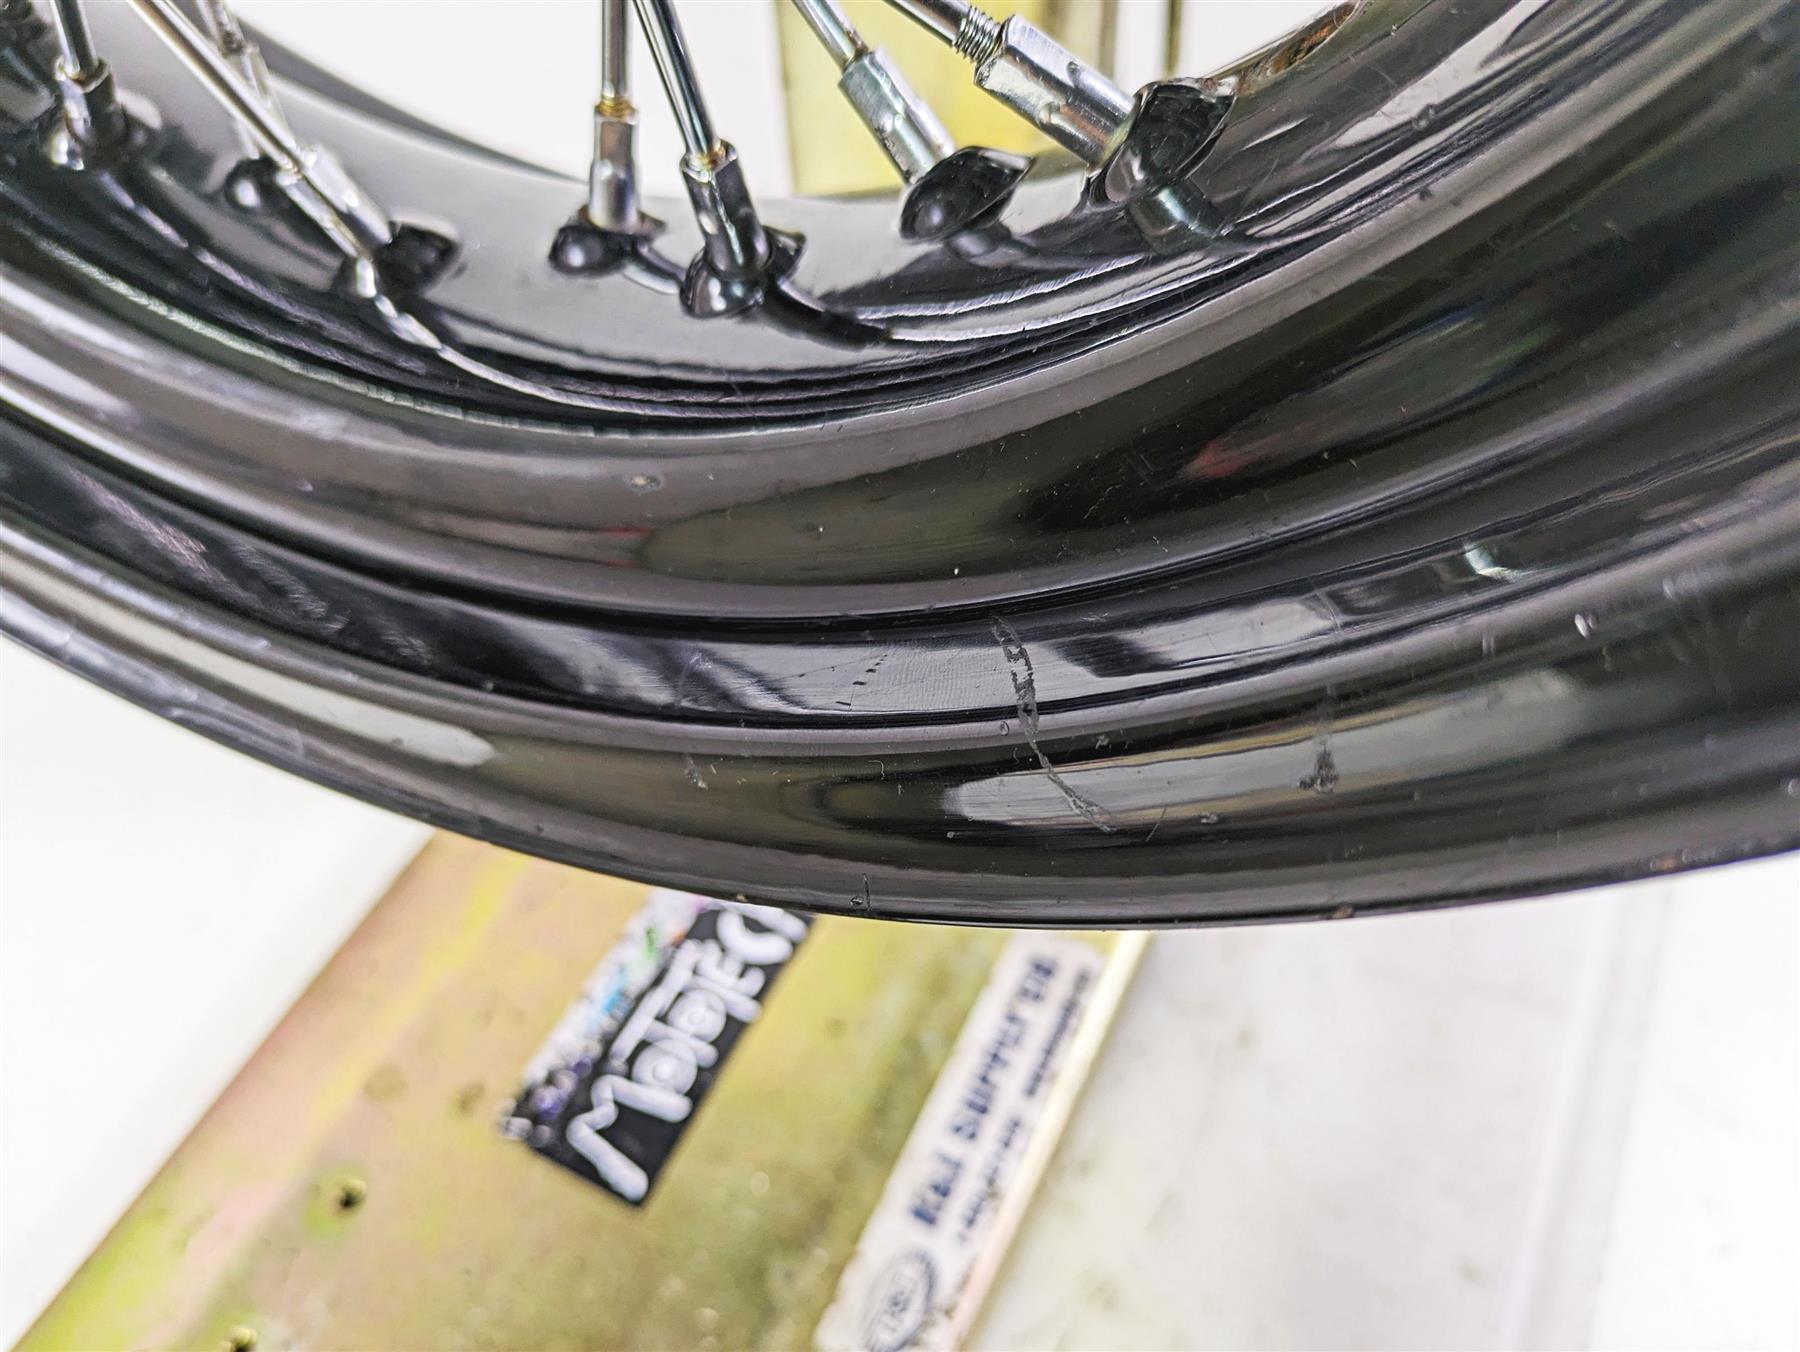 2013 Harley FXDWG Dyna Wide Glide 17x4.5 Rear Wheel Spoke Rim - Read 41430-09A | Mototech271